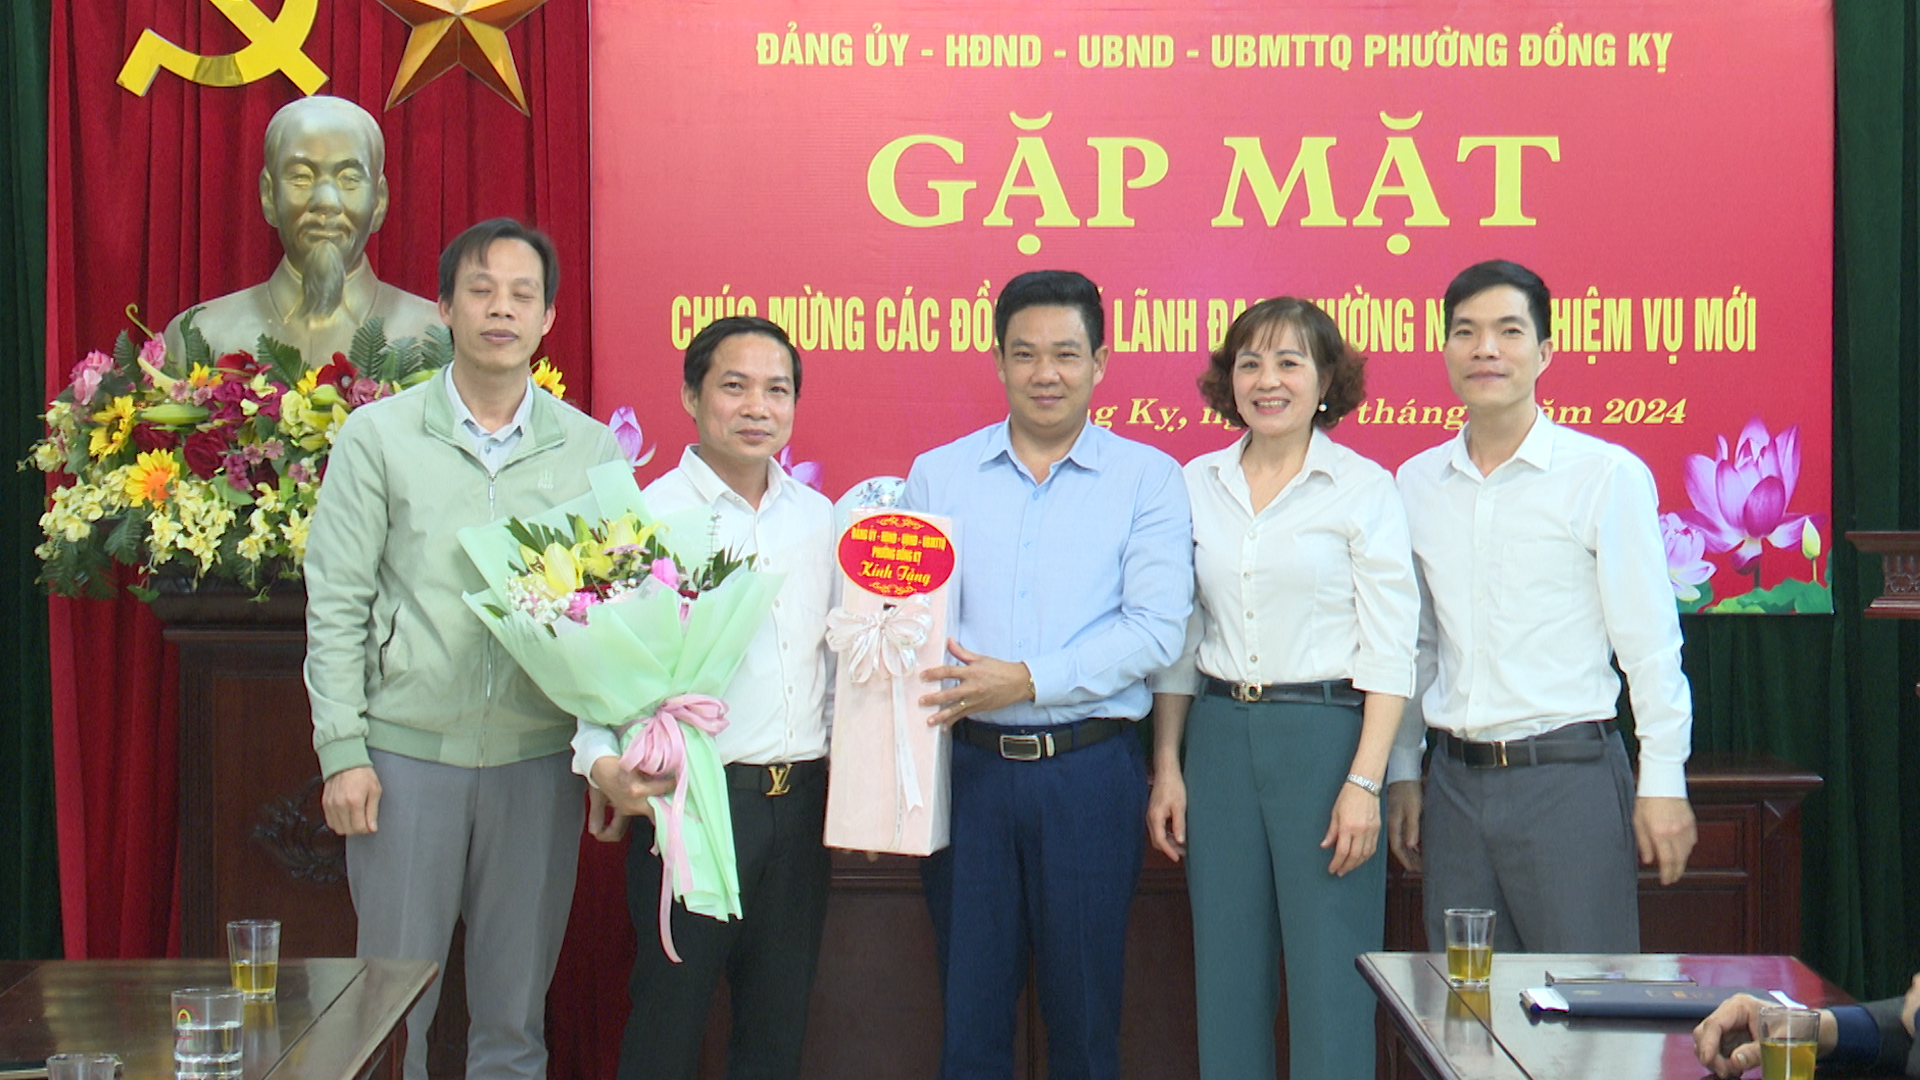 Đảng uỷ Đồng Kỵ gặp mặt lãnh đạo phường nhận nhiệm vụ mới.